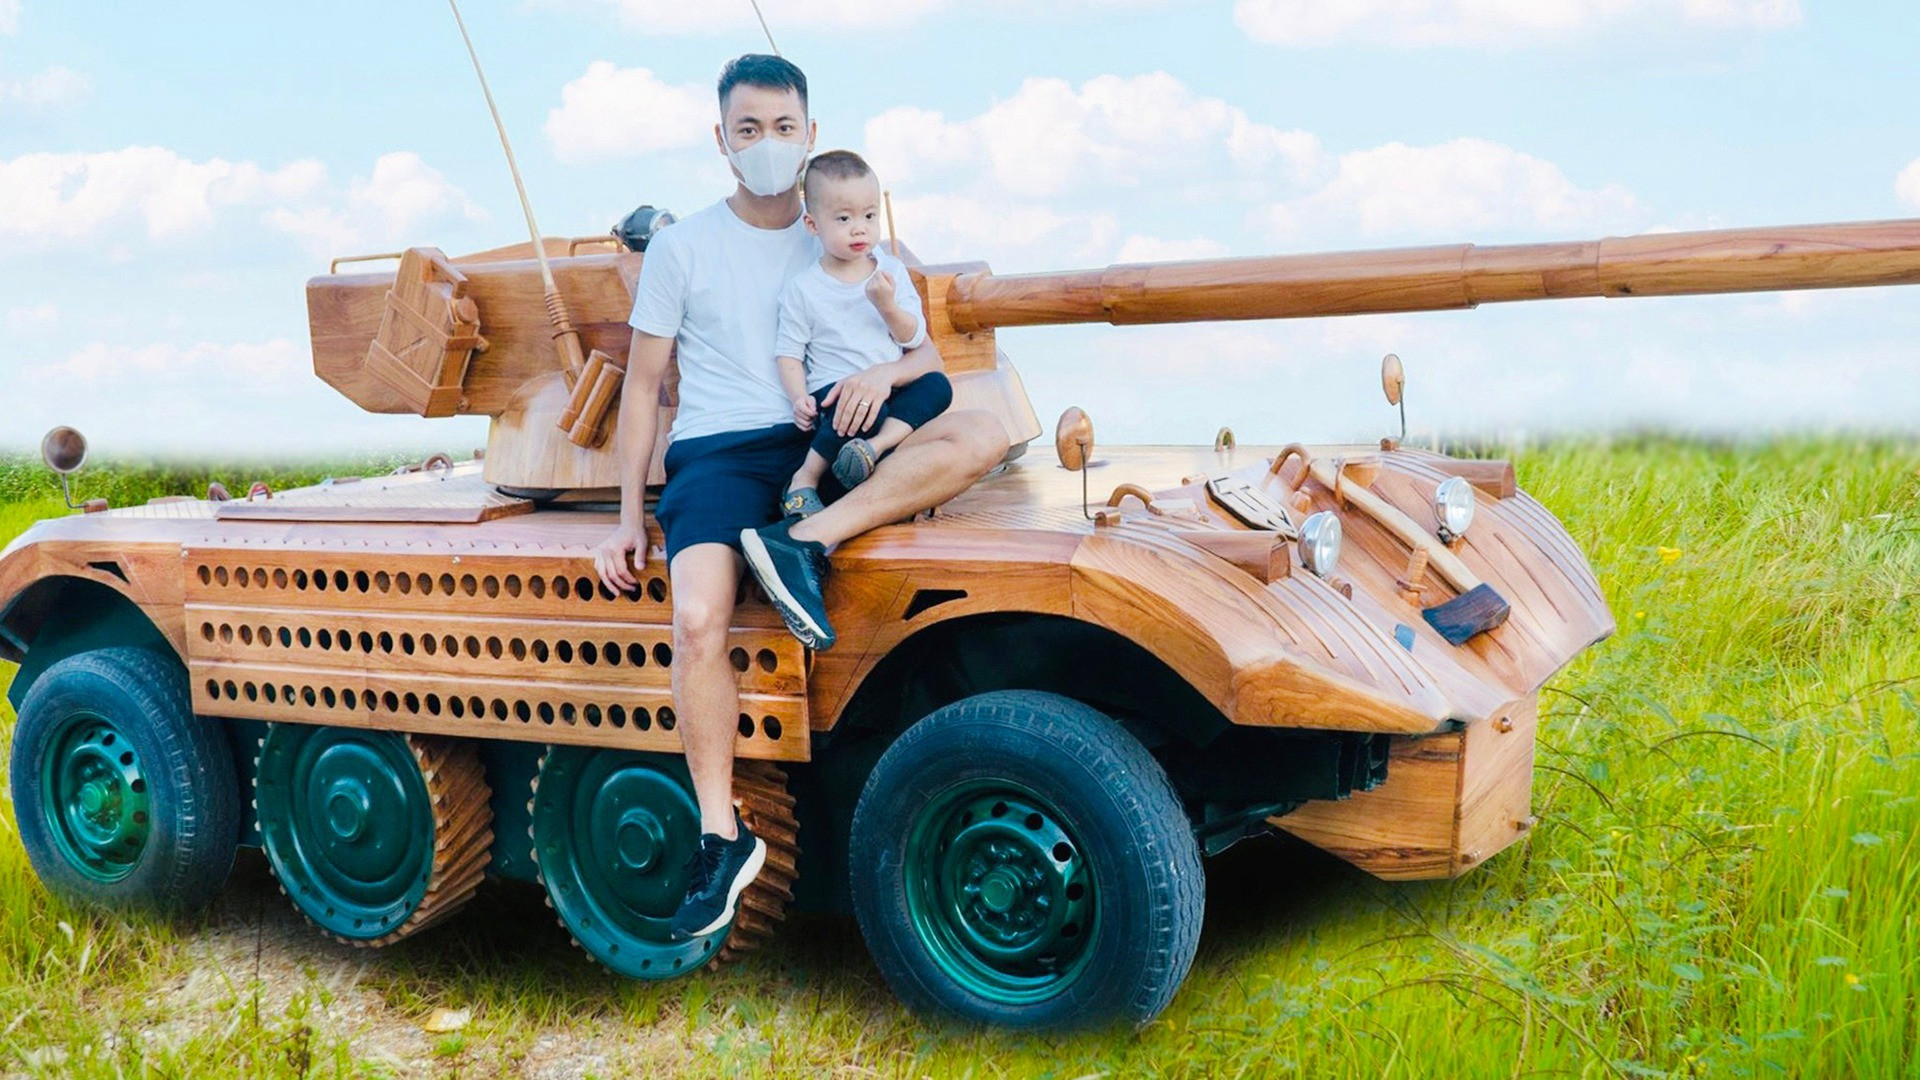 Ông bố Bắc Ninh chế tạo ‘siêu xe’ bằng gỗ để con trai vi vu trên đường - Ảnh 9.